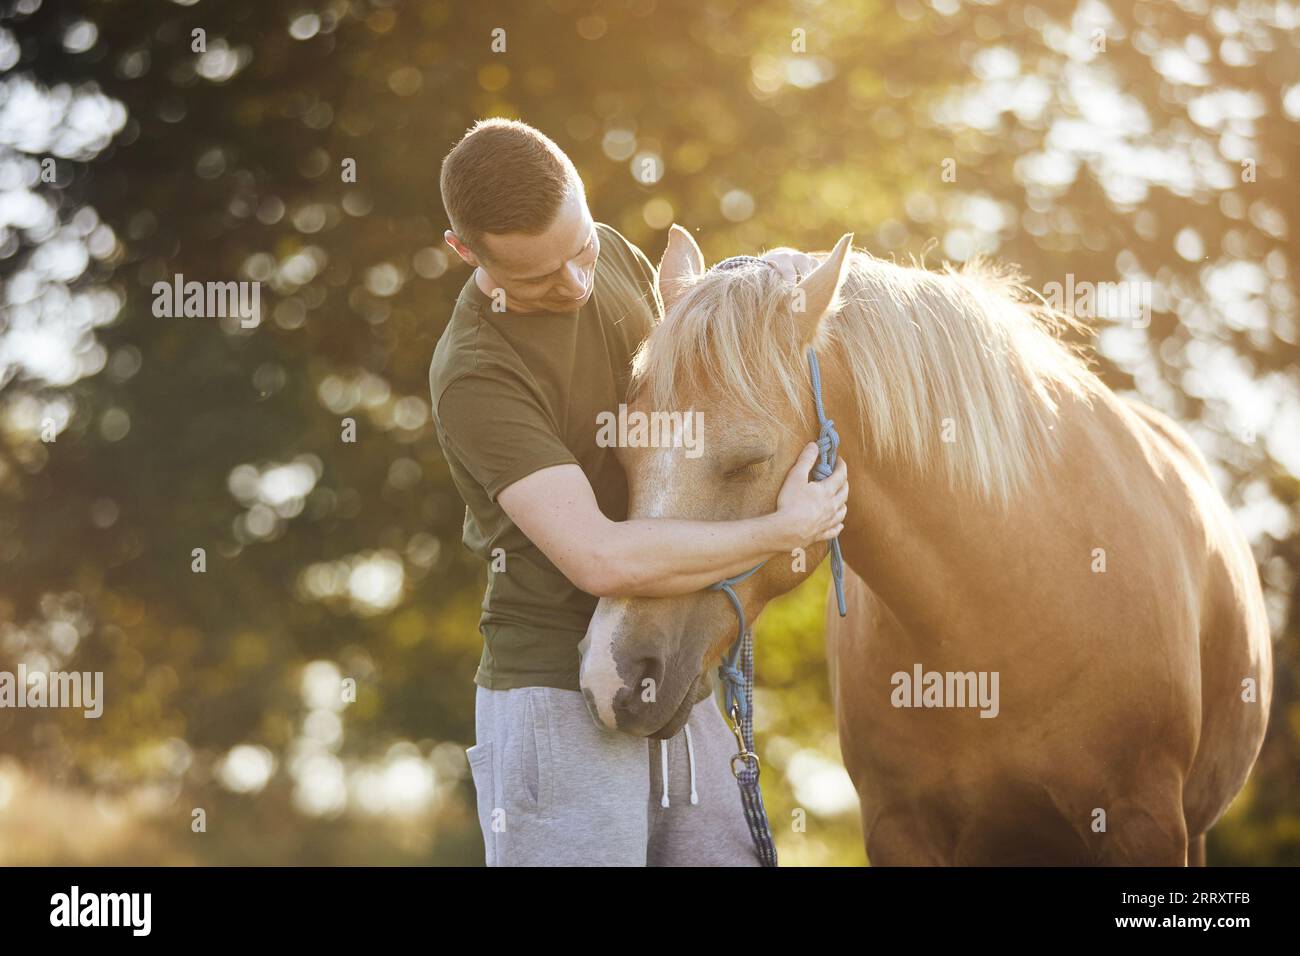 Der Mensch nimmt das therapiehafte Pferd auf. Themen Hippotherapie, Pflege und Freundschaft zwischen Mensch und Tier. Stockfoto